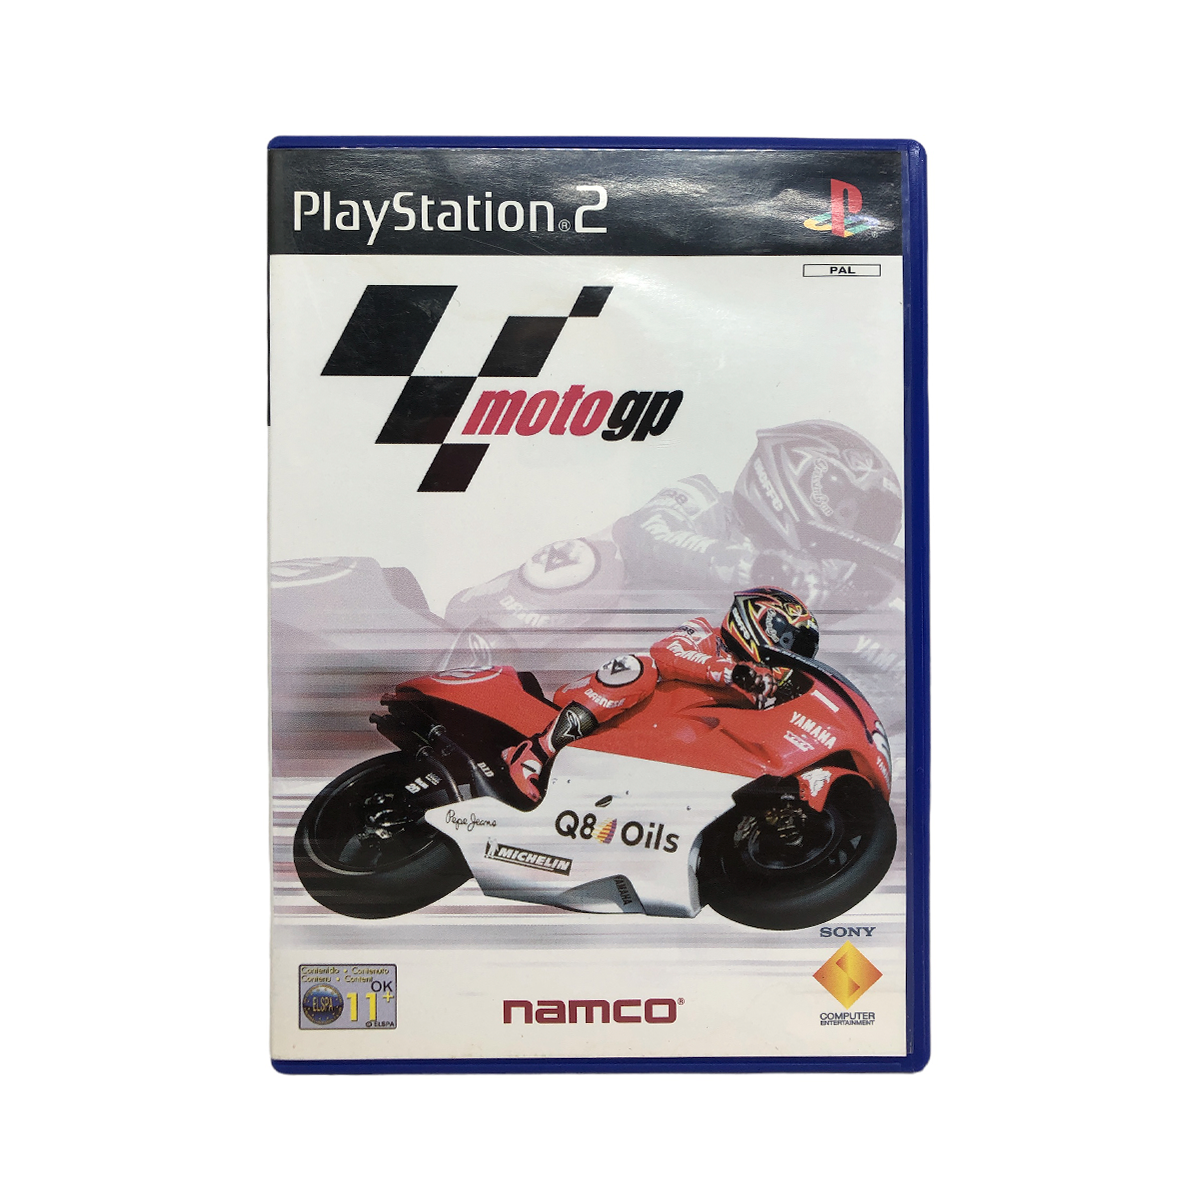 jogo moto gp 14 europeu Xbox 360 original